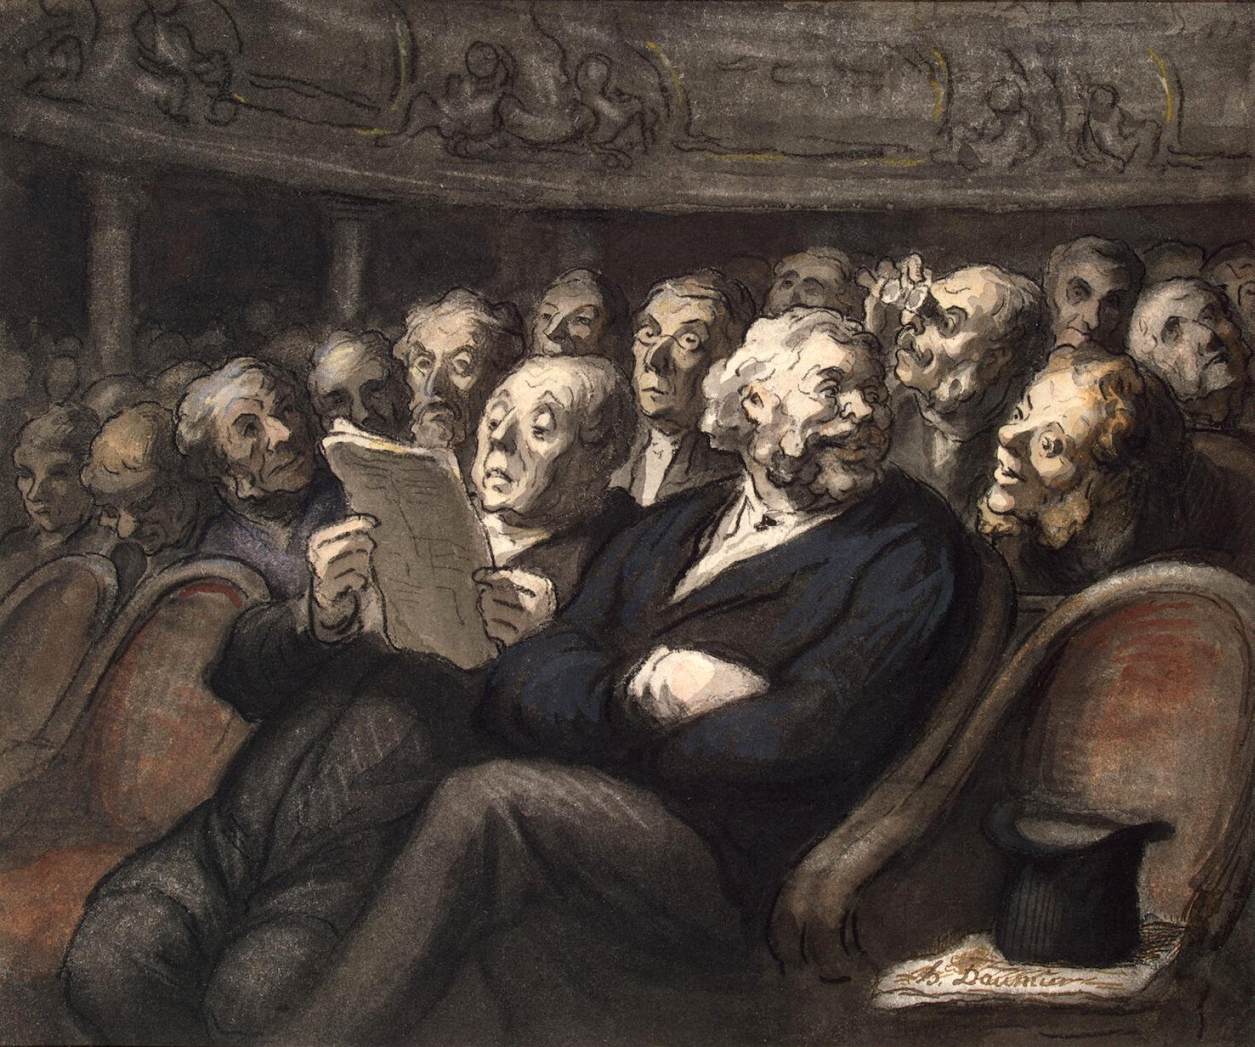 Honoré_Daumier_-_Intermission_at_the_Comédie_Française_-_WGA05962